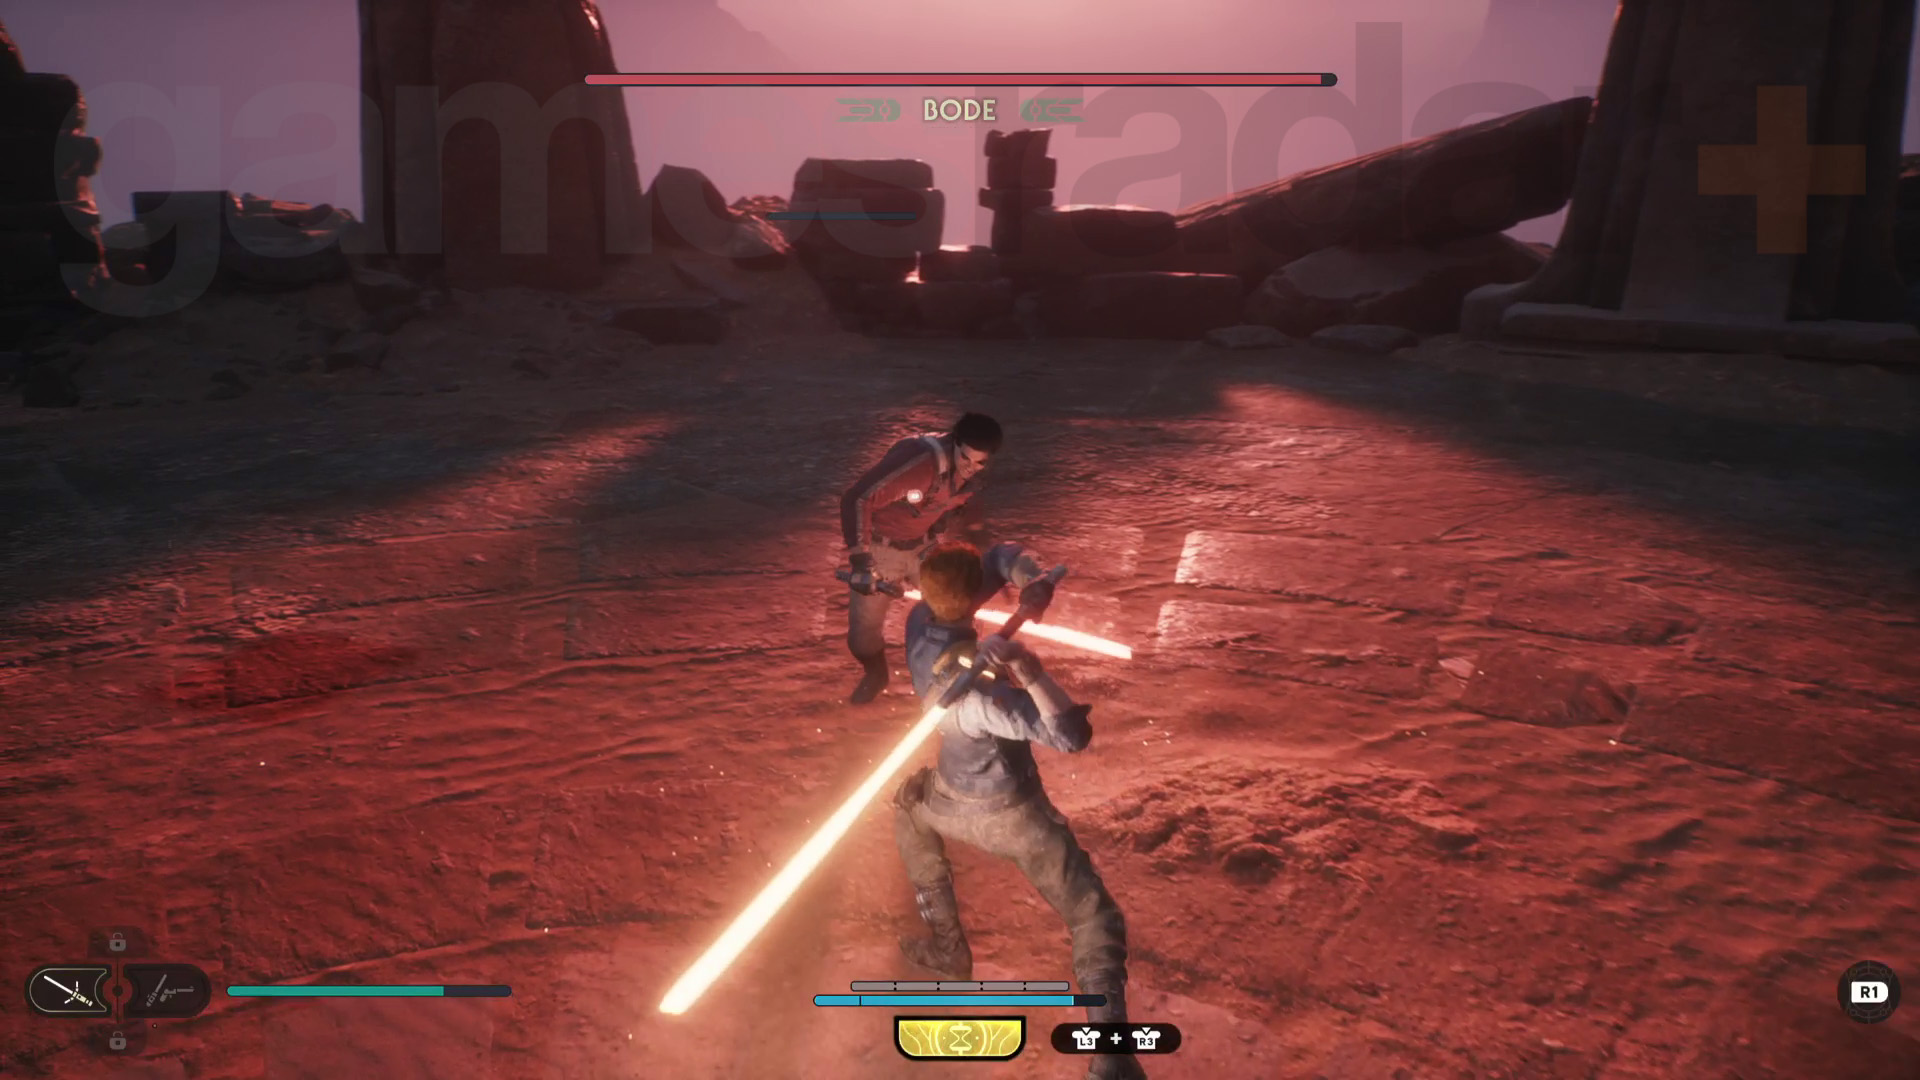 Star Wars Jedi Survivor Jedha walkthrough Cal taistelee Bodea vastaan, jolla on nyt punainen valomiekka.